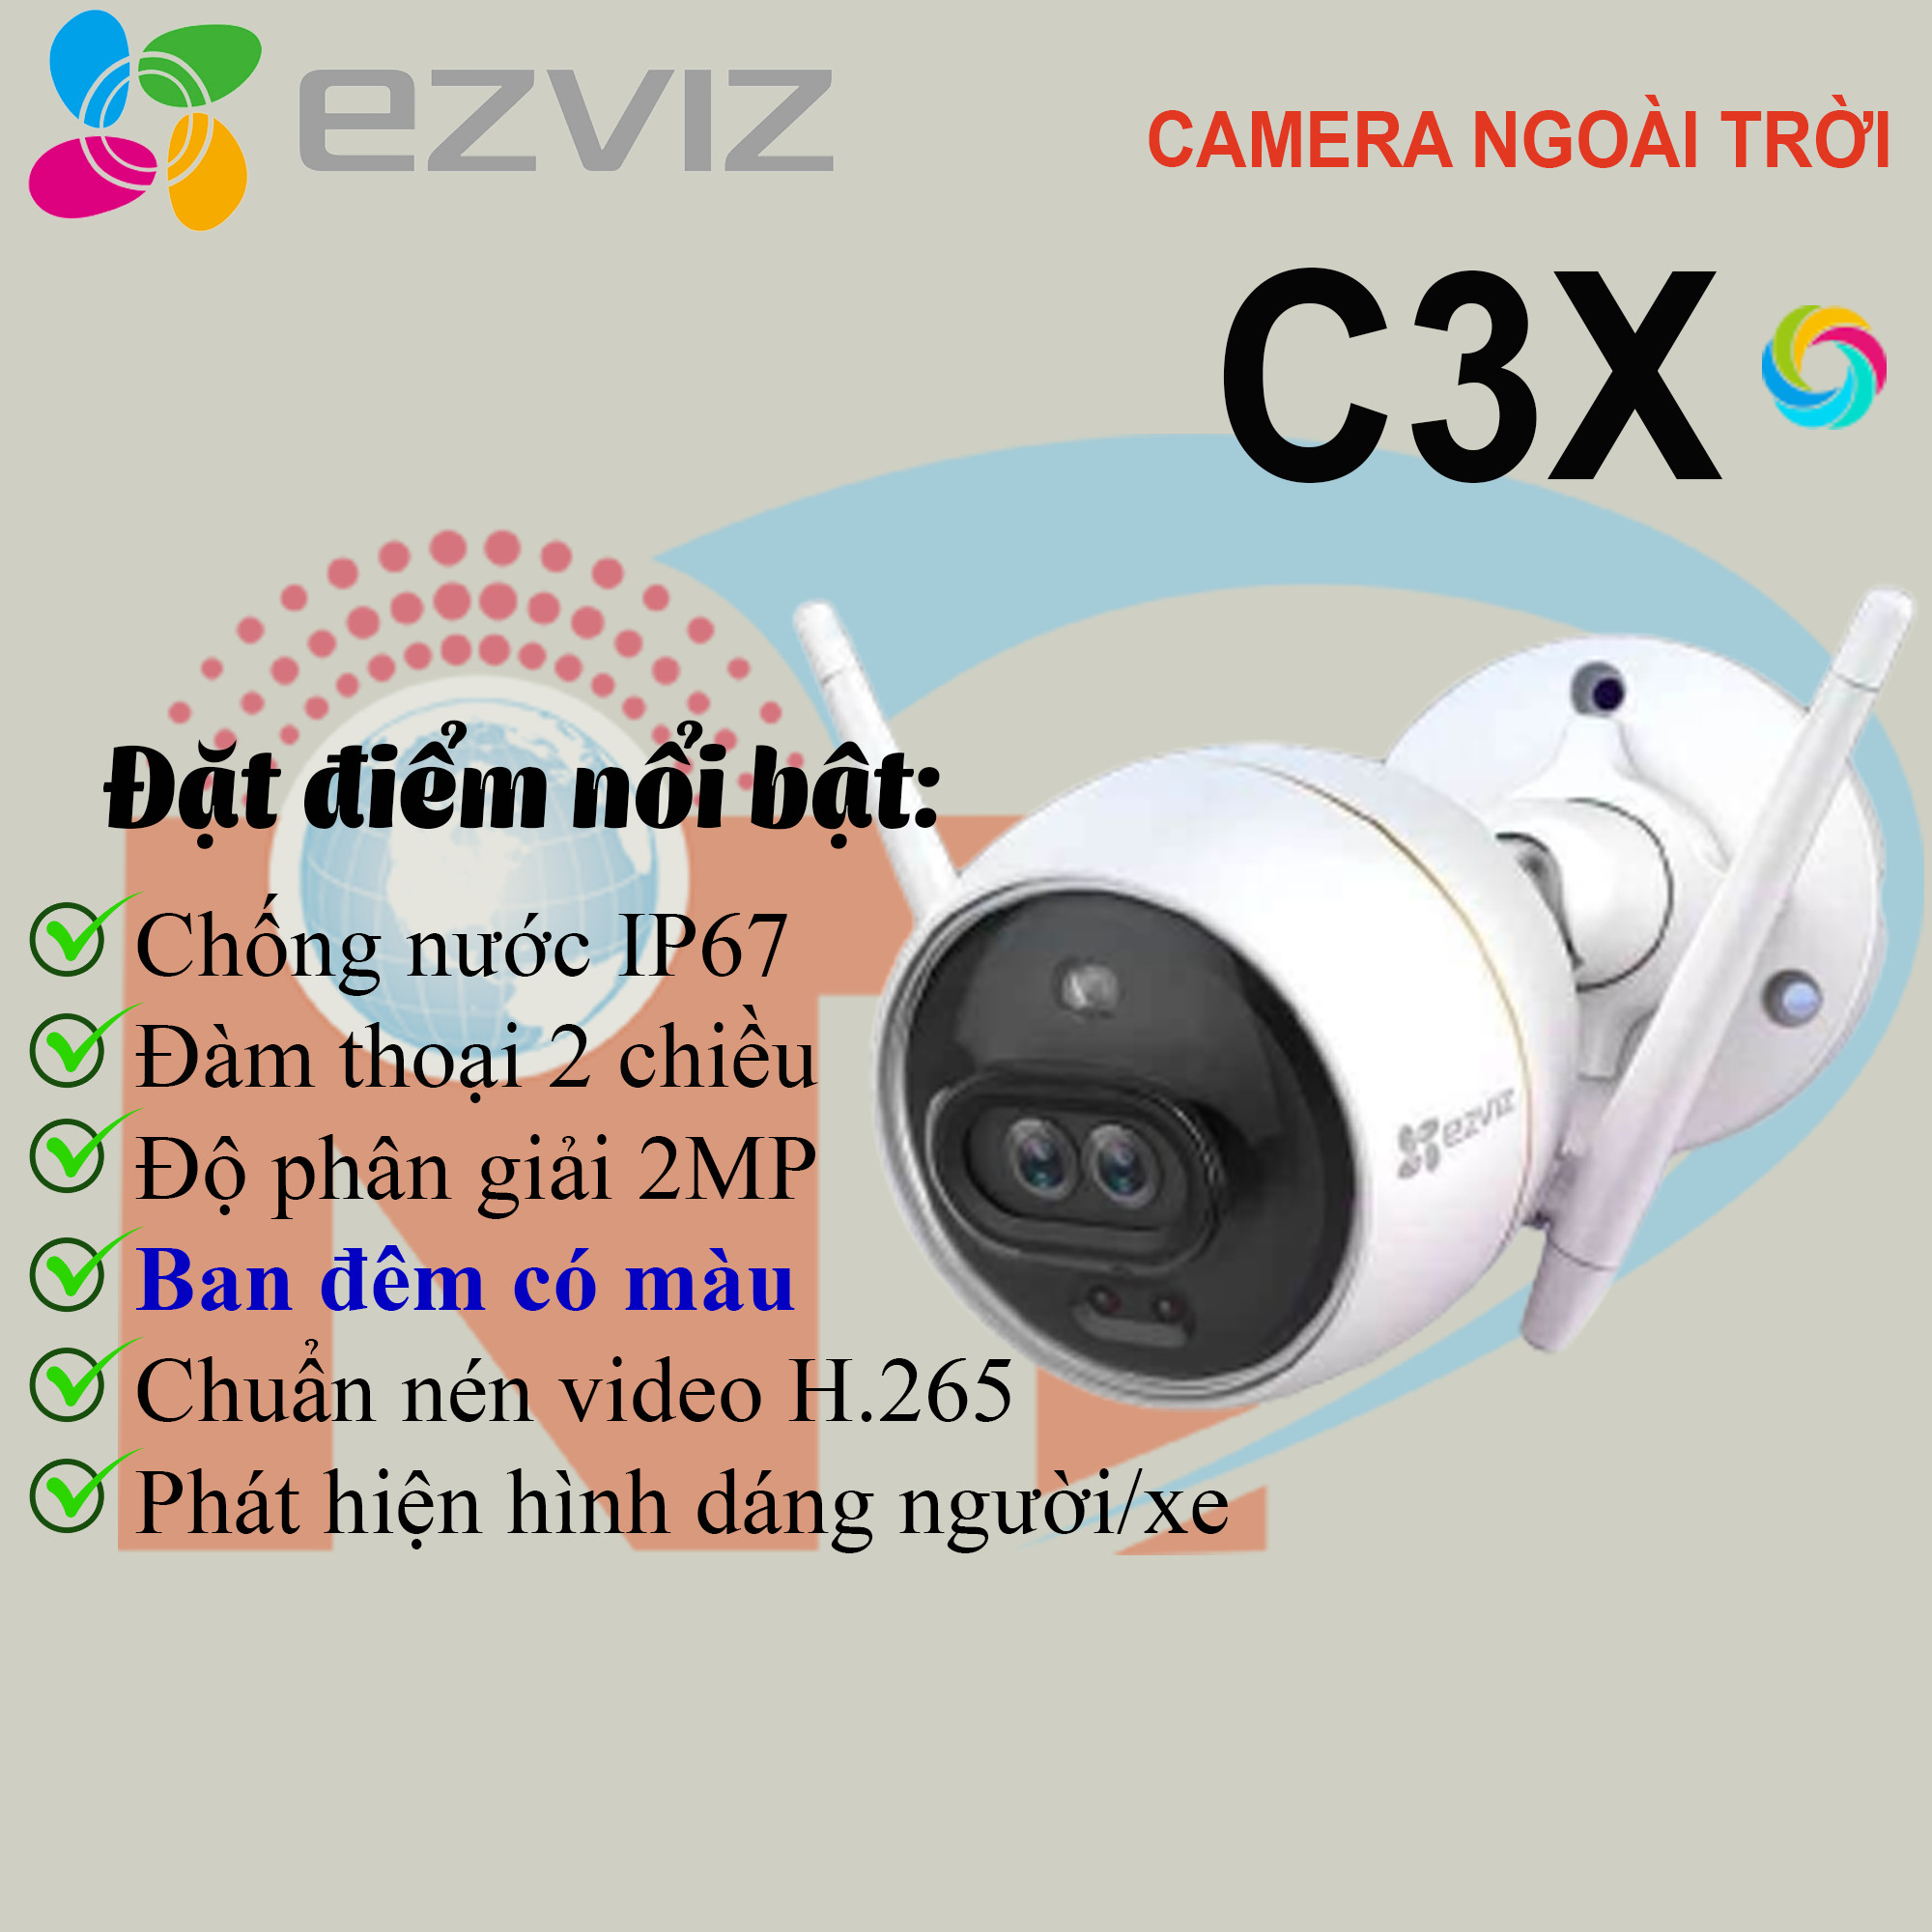 Camera EZVIZ C3X 1080P, WIFI, Chống Nước IP67, Ghi Gình Ban Đêm Có Màu, Tích Hợp AI, Chuẩn Nén Video H.265 - Hàng Chính Hãng